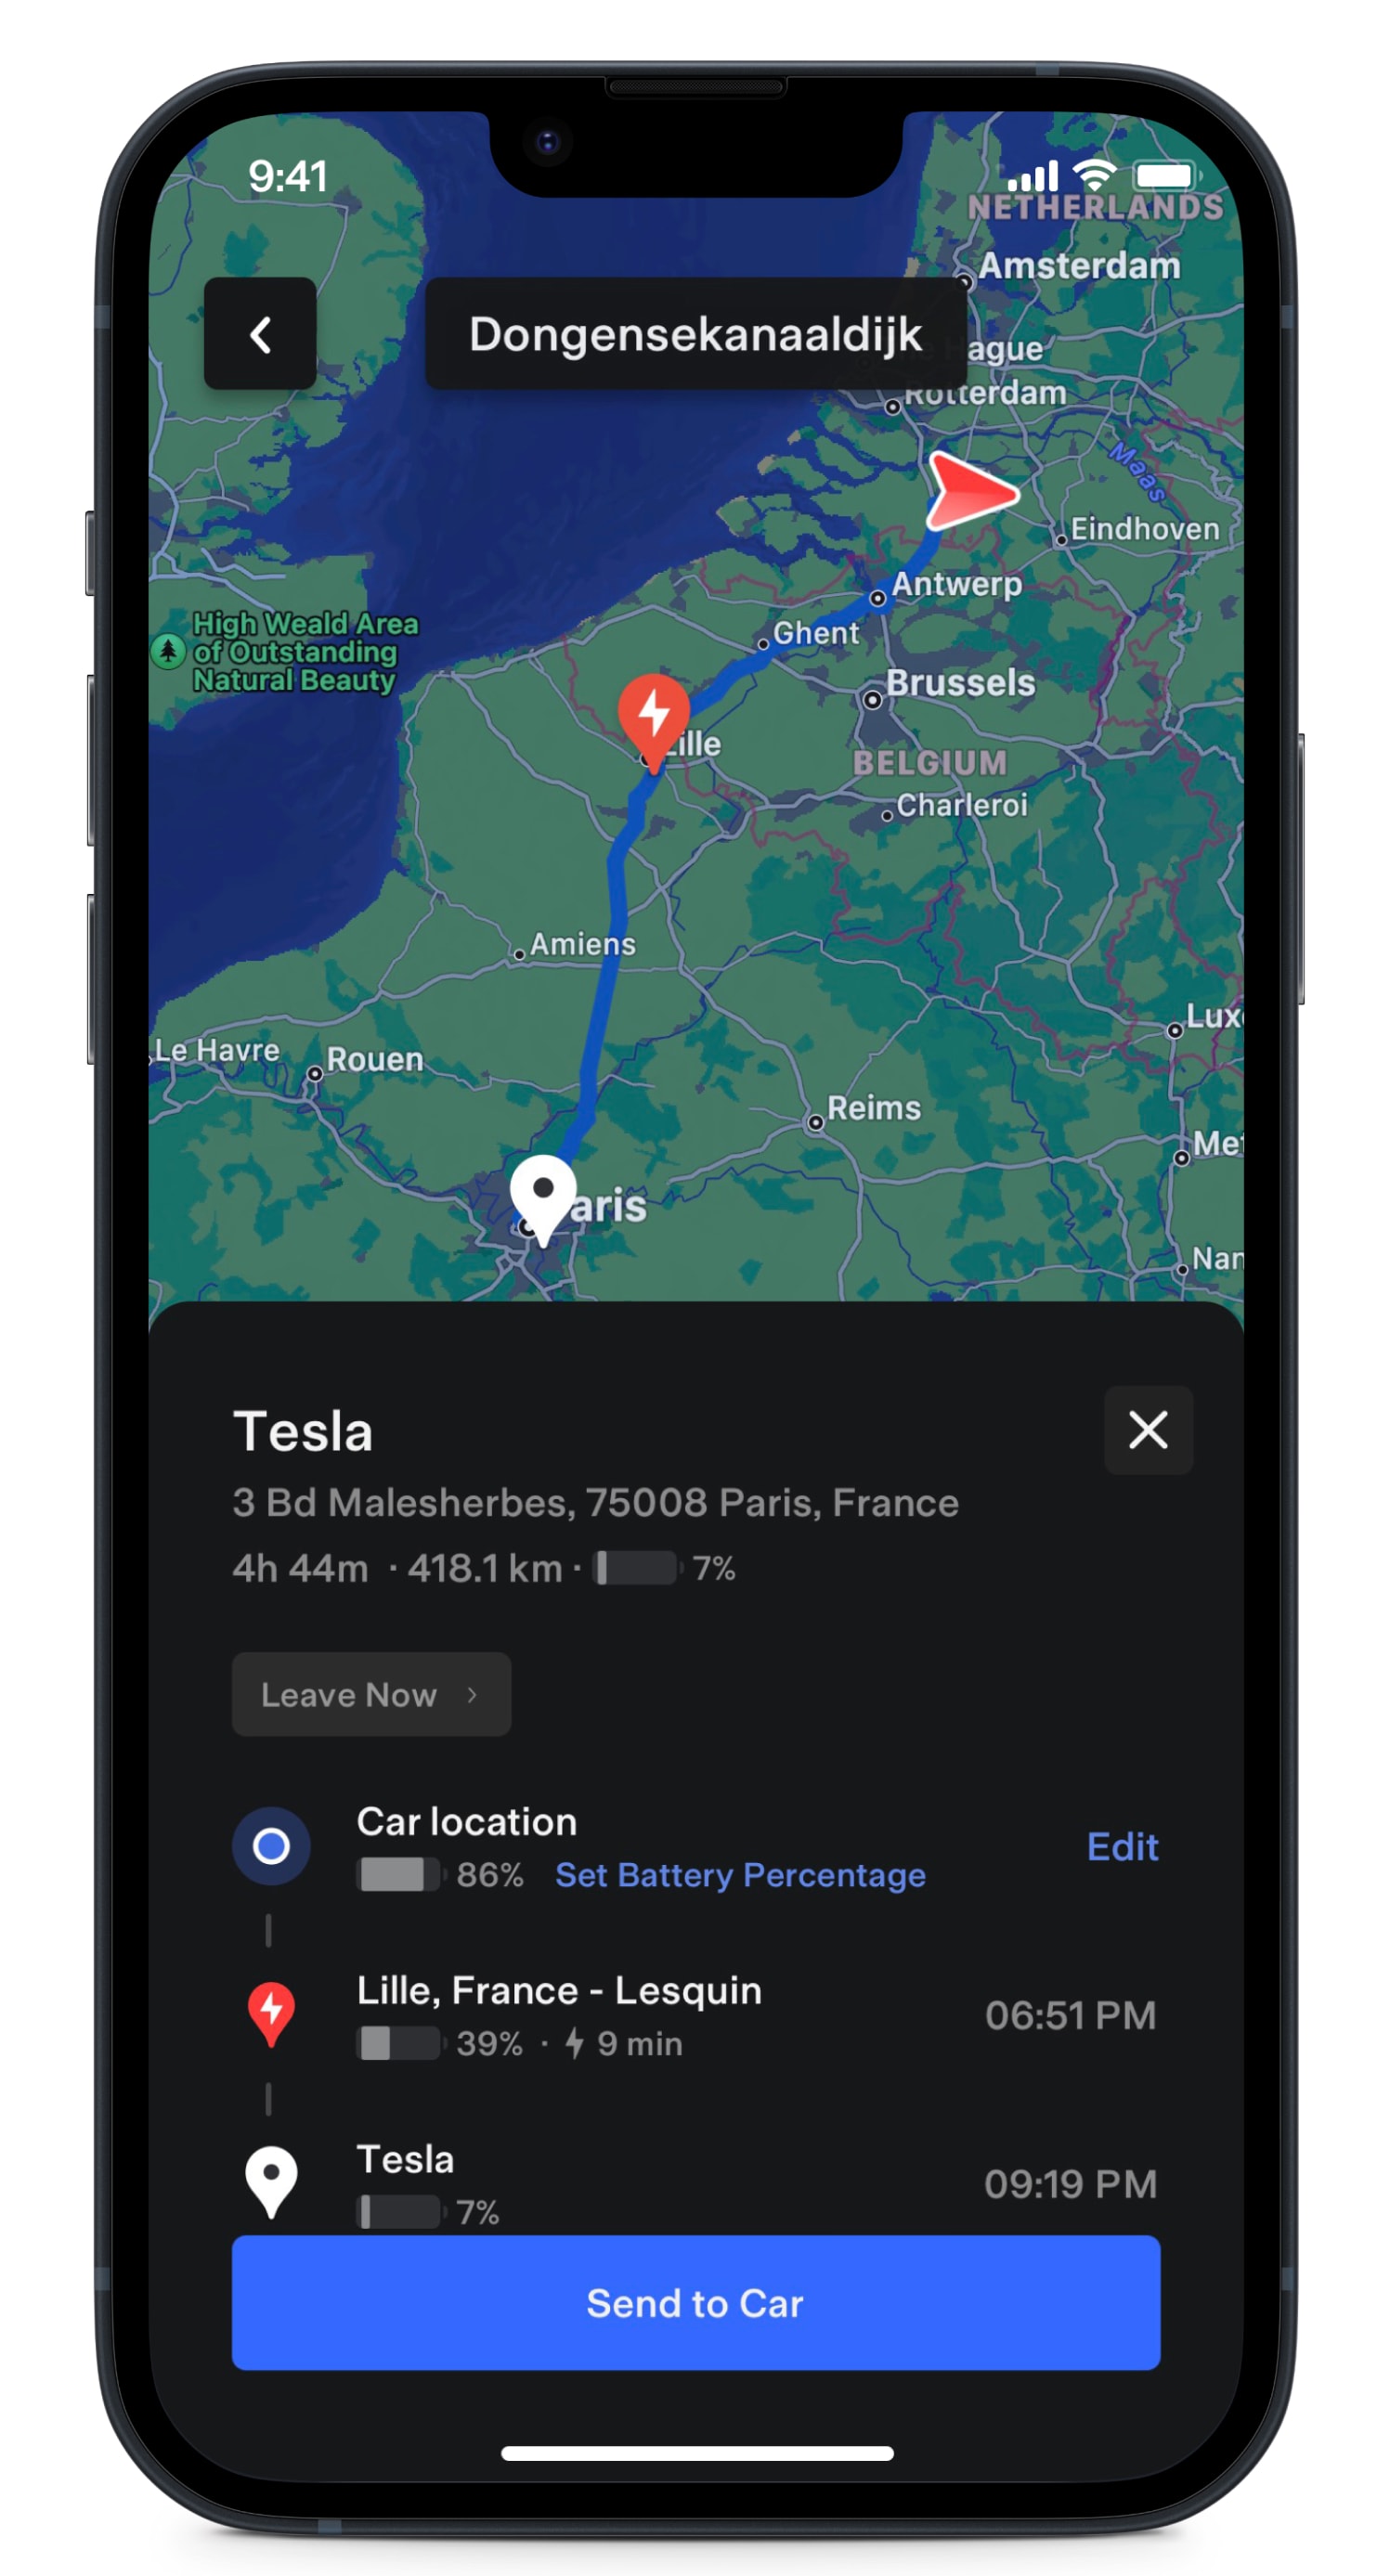 หน้าจอแอป Tesla กำลังแสดงเส้นทางบนแผนที่พร้อมจุดชาร์จระหว่างทาง 